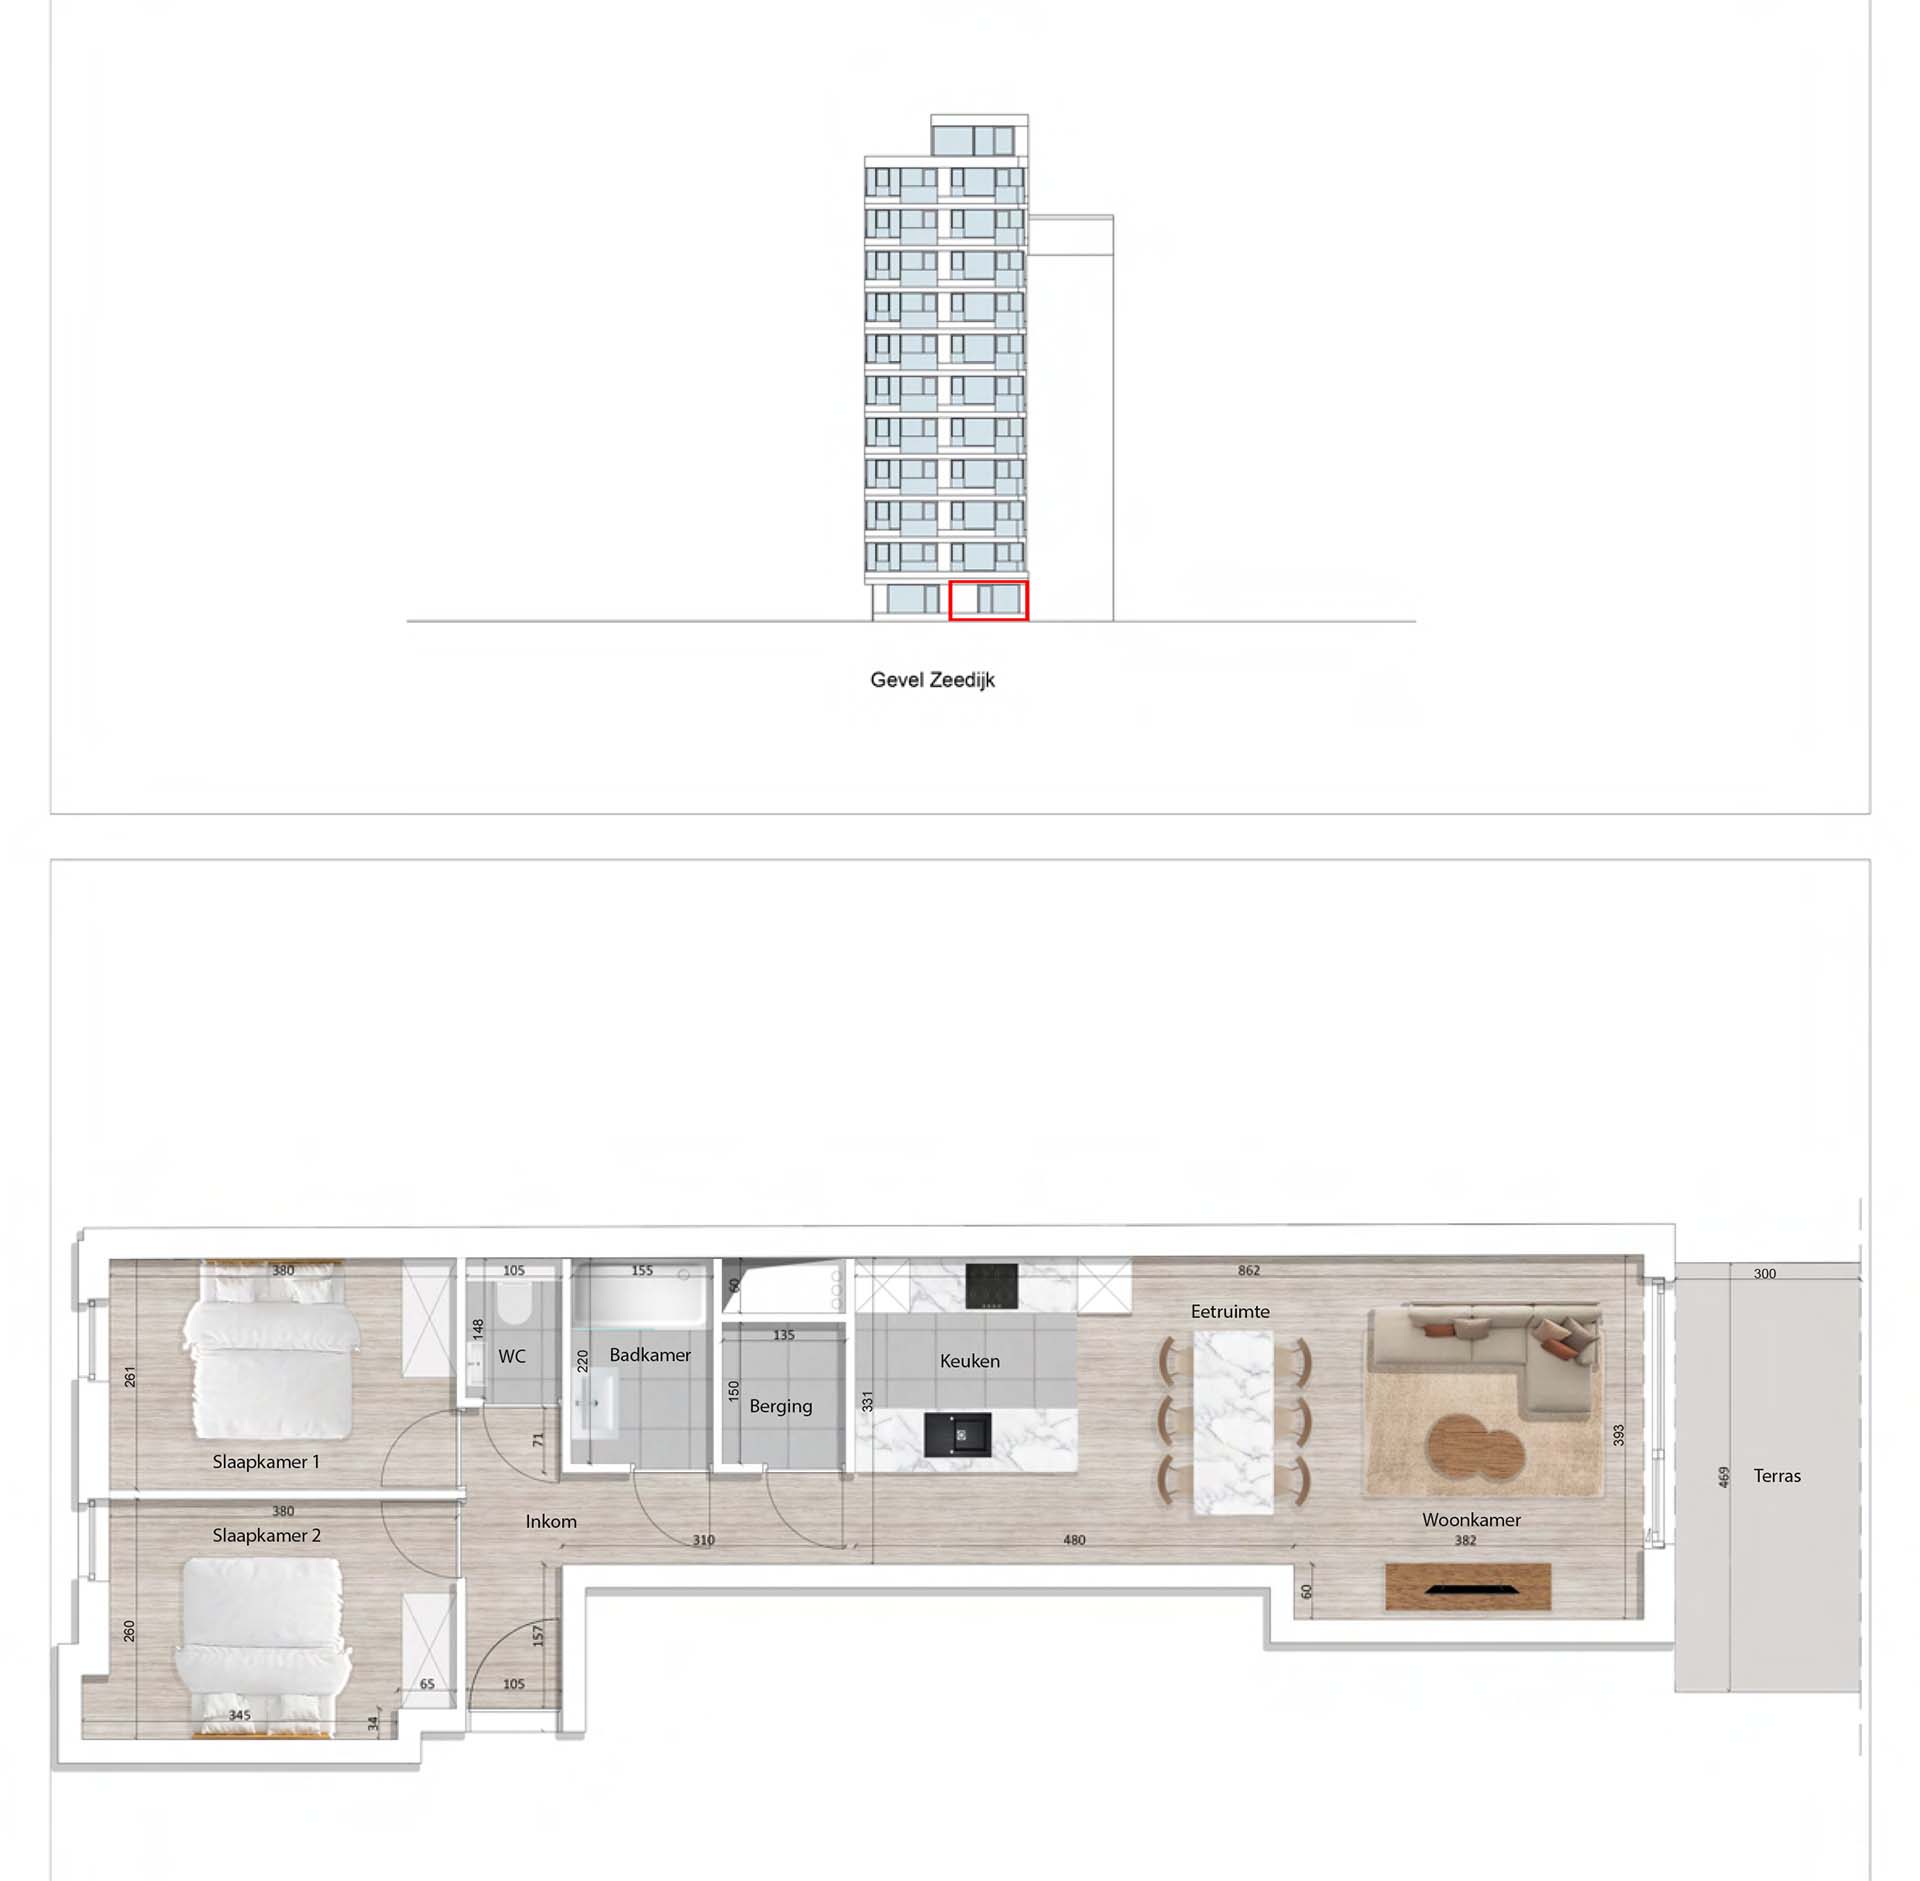 Residentie <br/> Pier - image appartement-te-koop-blankenberge-residentie-pier-plan-0002-1 on https://hoprom.be